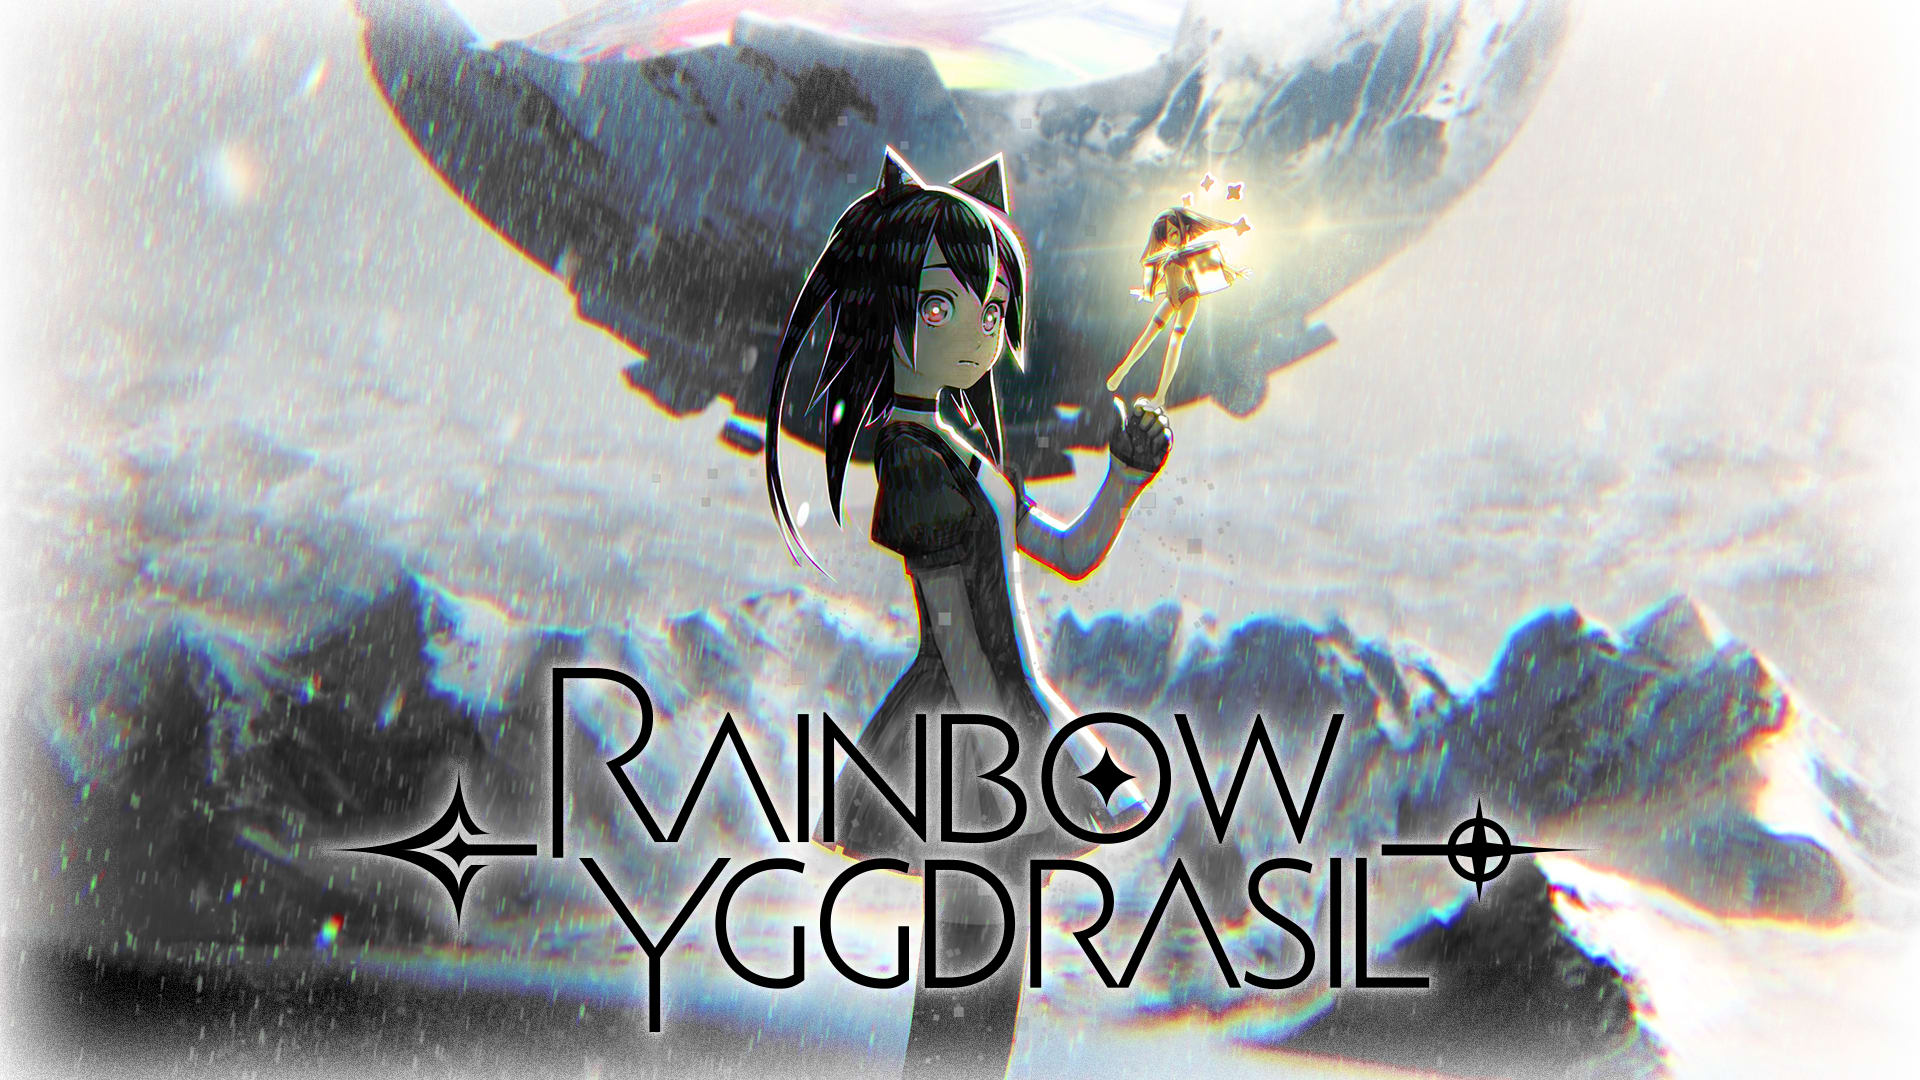 Rainbow Yggdrasil